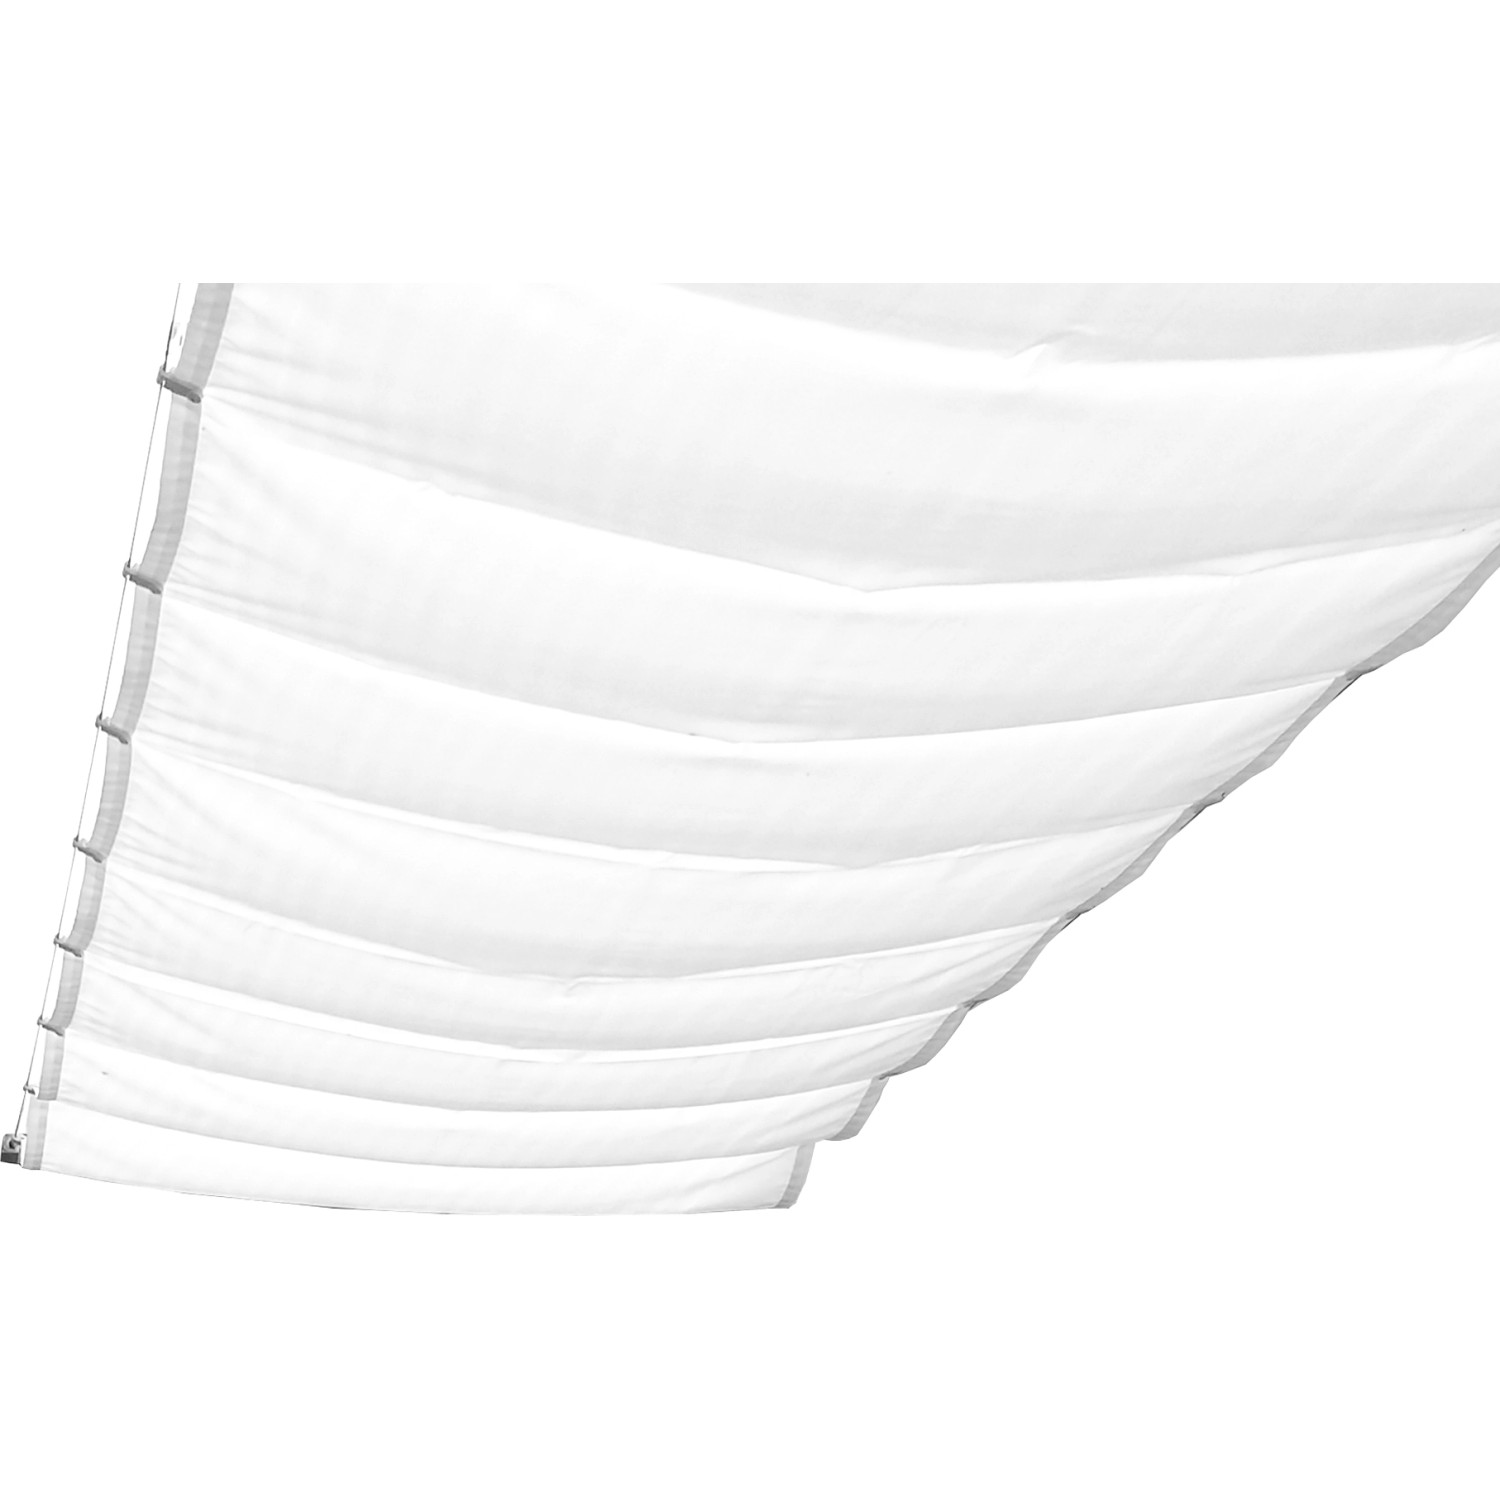 Peddy Shield Sonnensegel 380 cm x 96 cm Uni Weiß von Peddy Shield